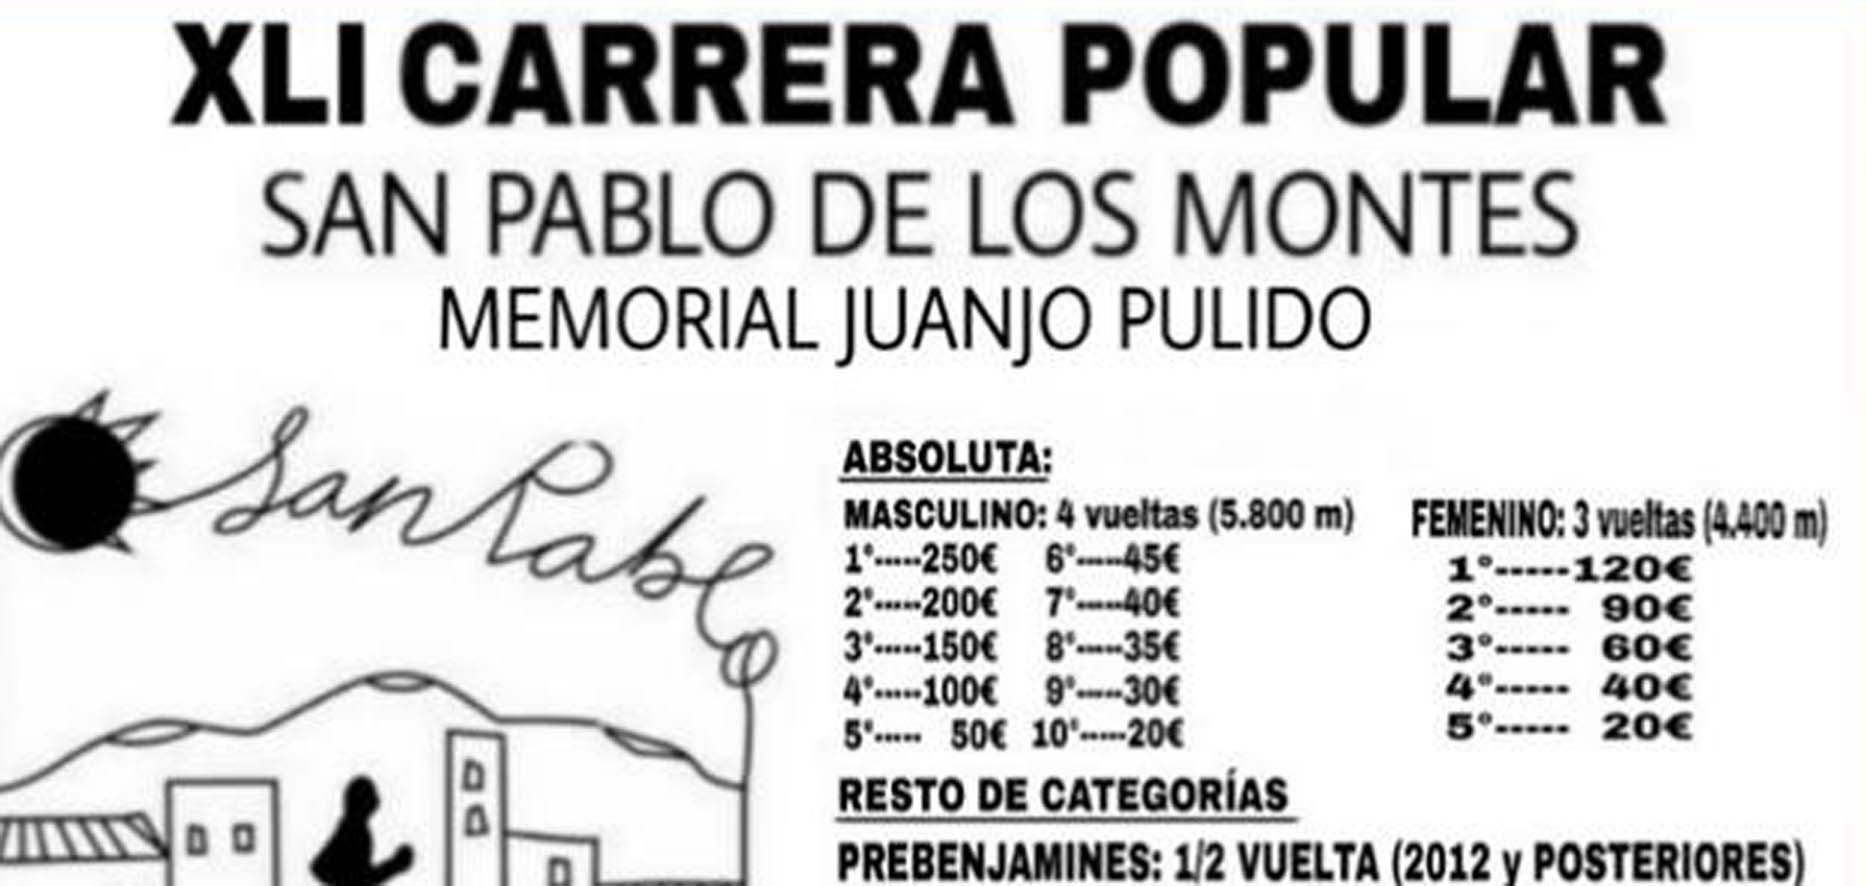 Cartel original de la carrera popular en San Pablo de los Montes.